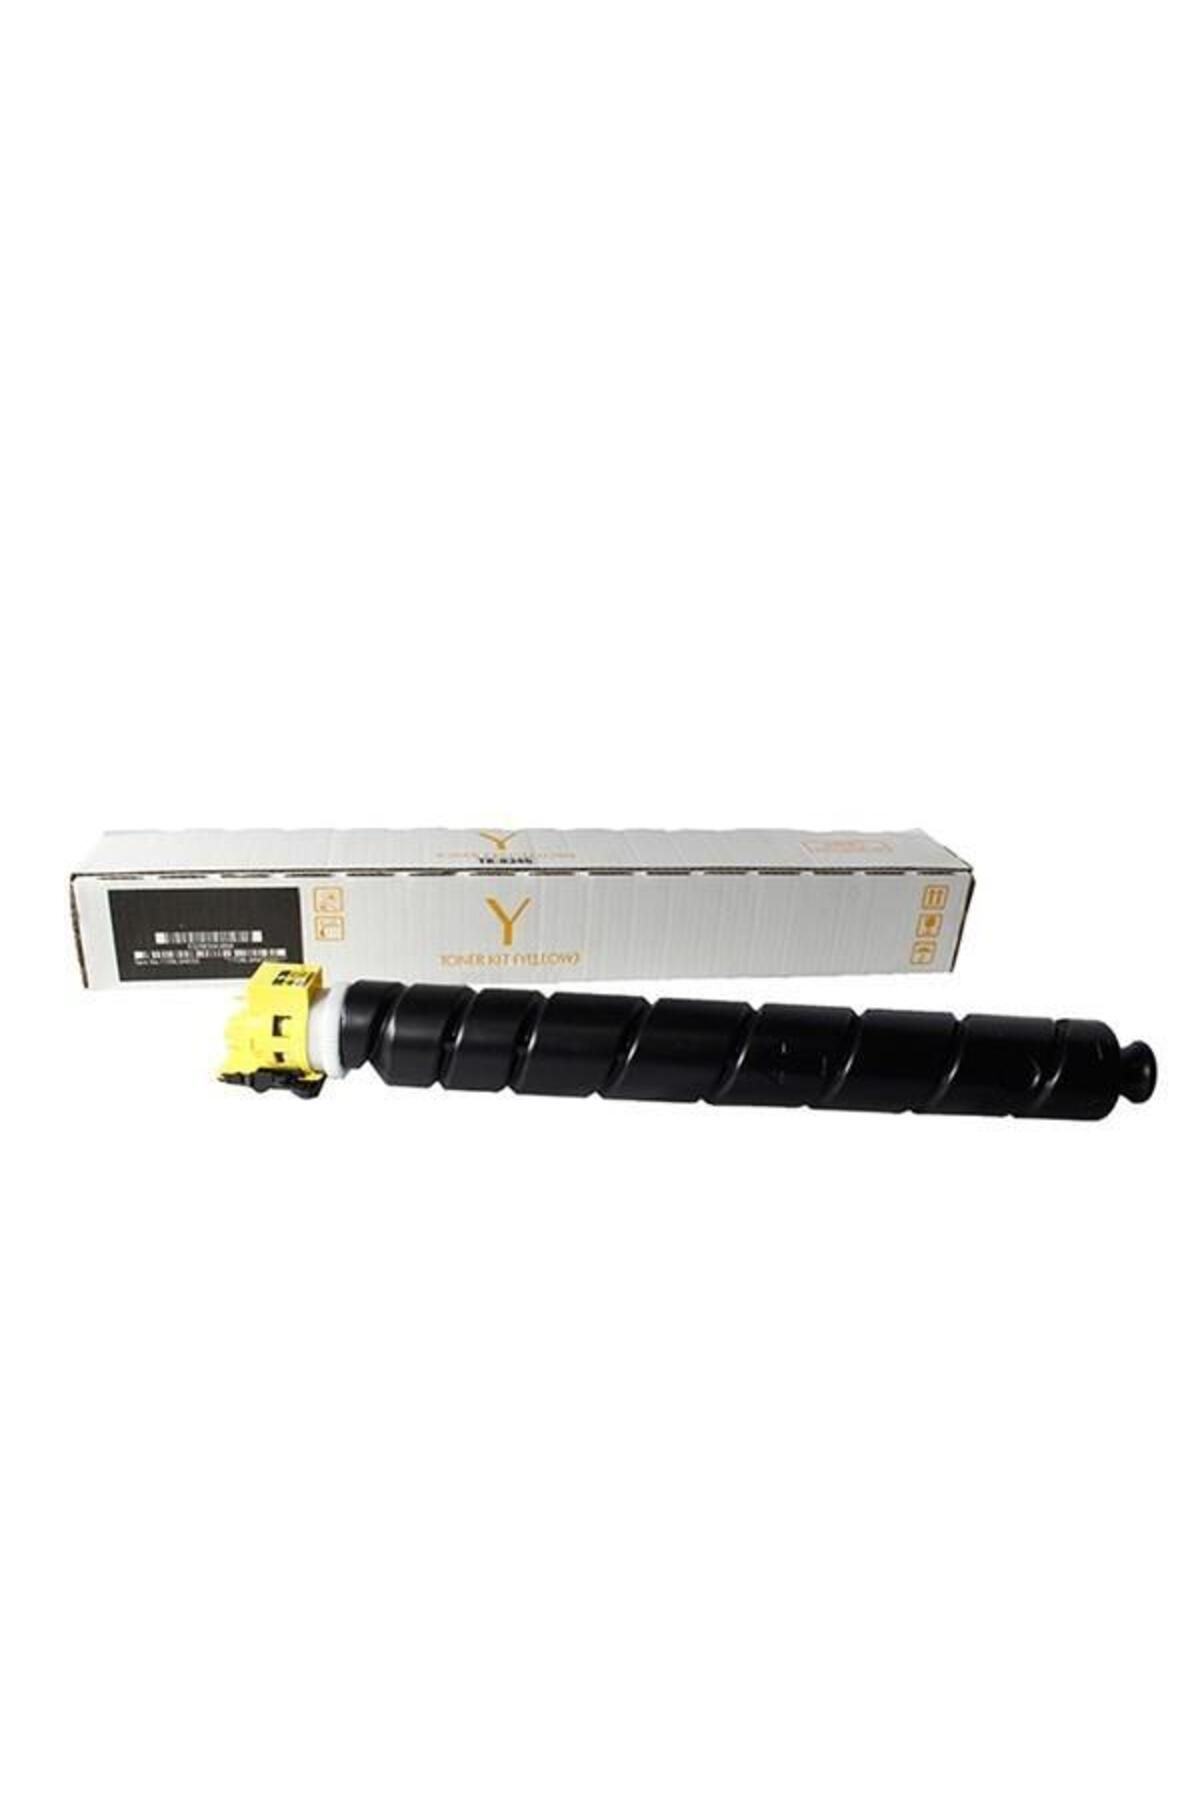 Genel Markalar Prıntpen Kyocera Tk-8800 Yellow (310GR) (20K)